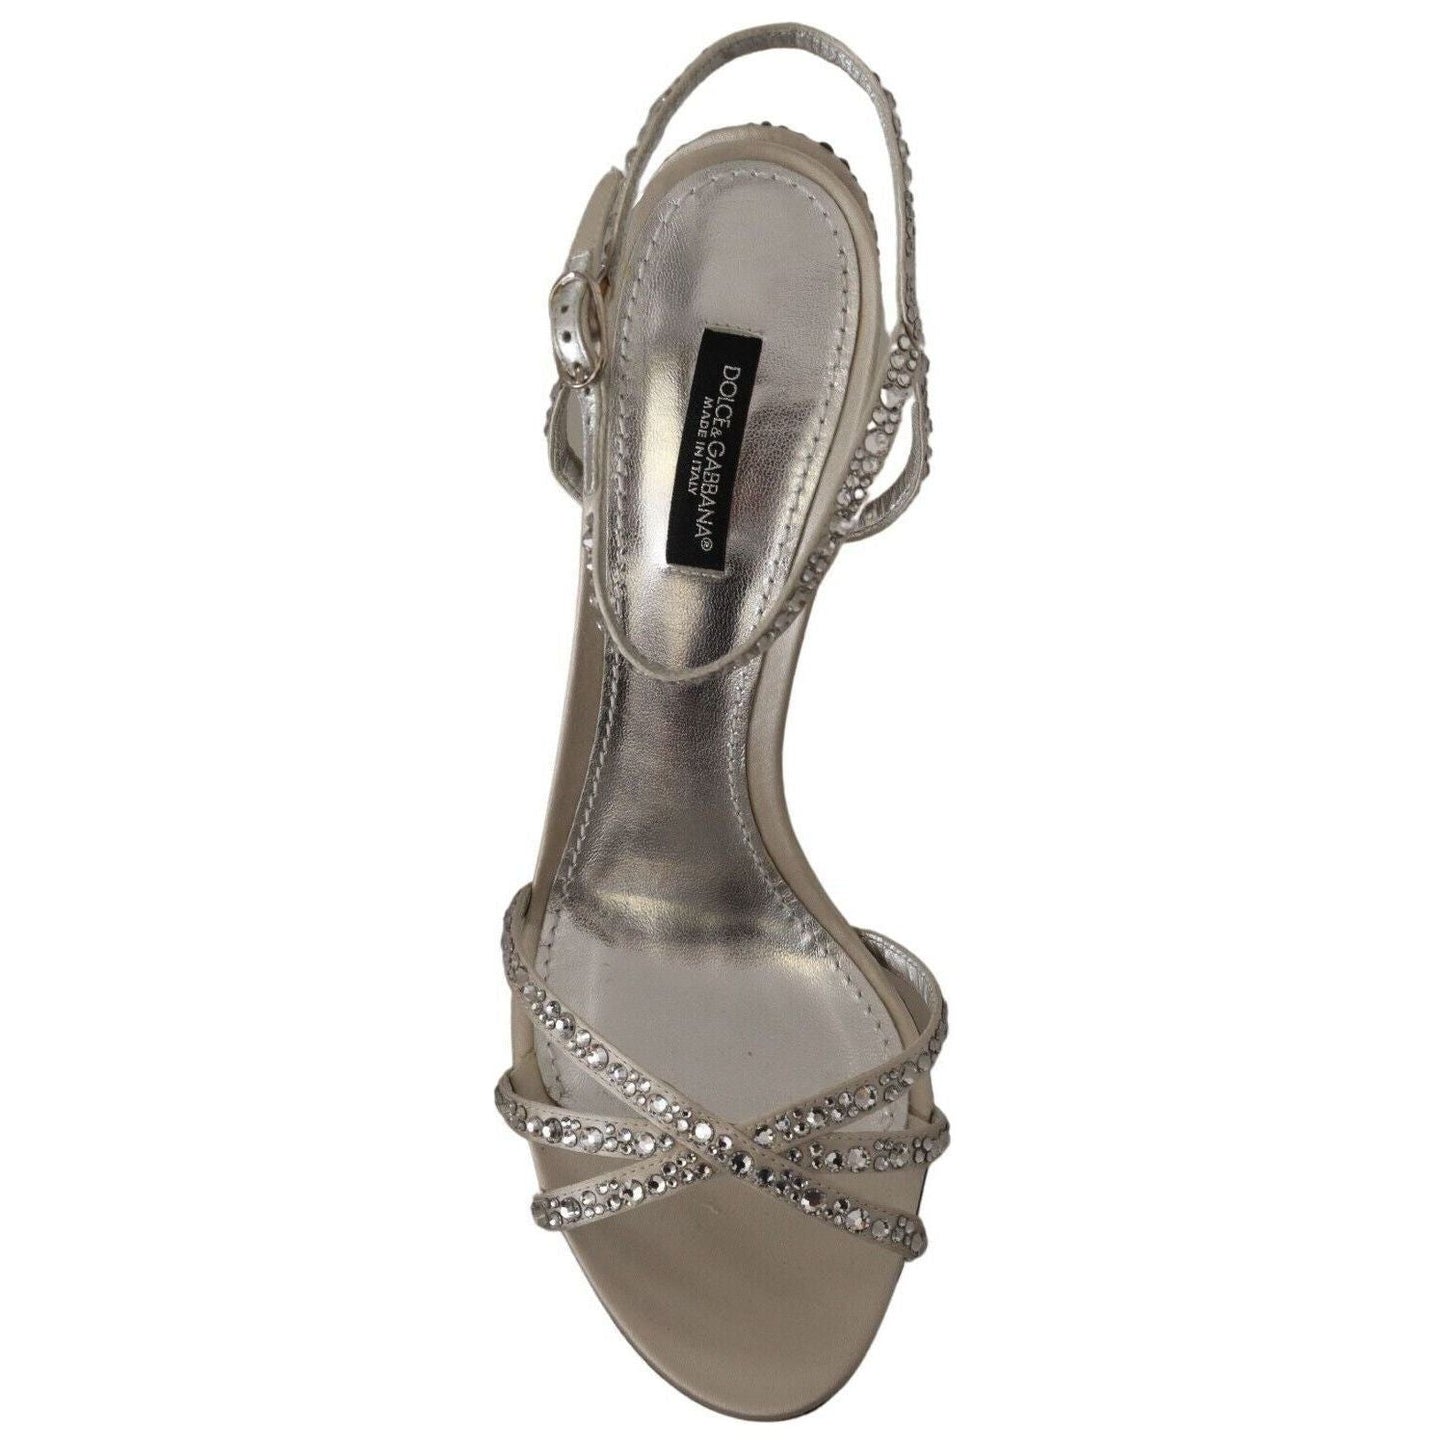 Dolce & Gabbana Crystal-Embellished Silk Blend Heels silver-crystal-covered-ankle-strap-sandals-shoes